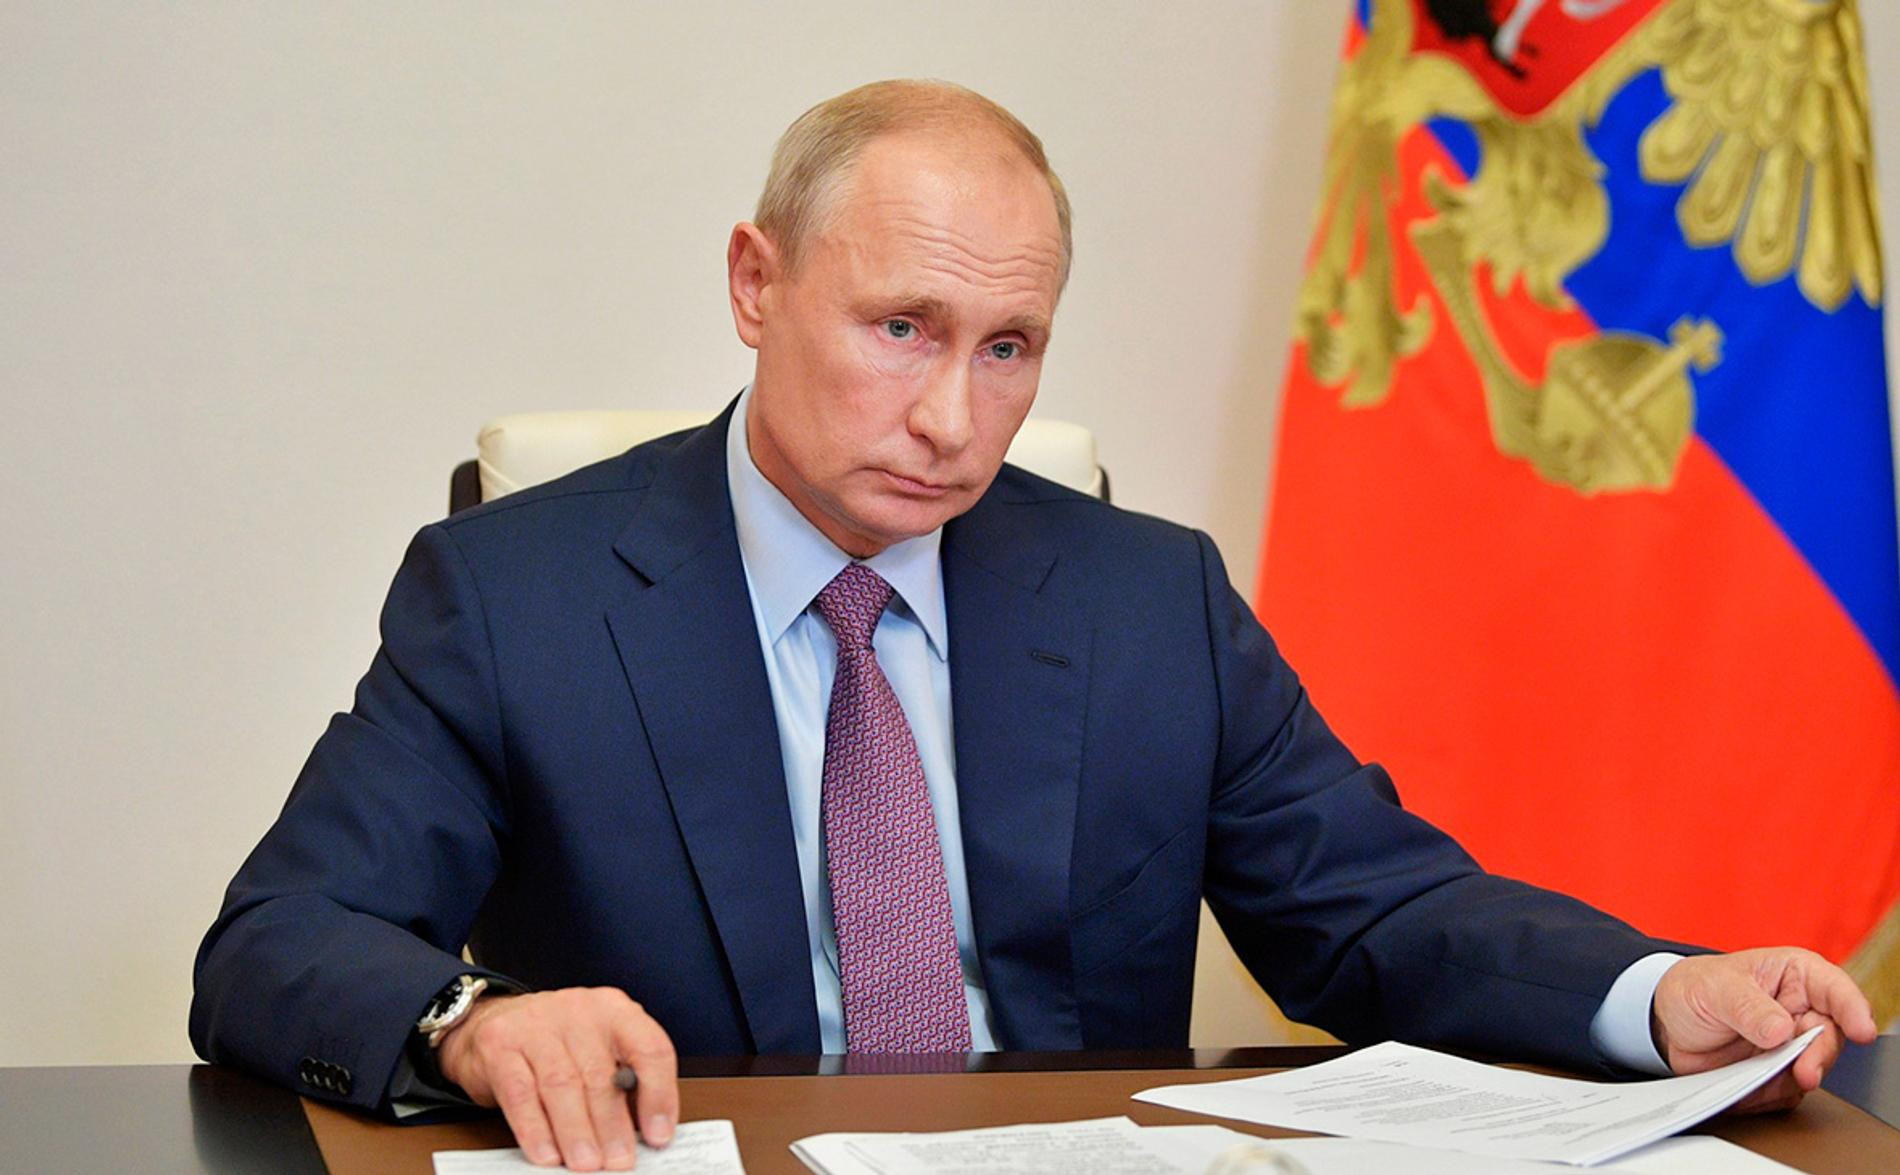 Мы против навязываний». Владимир Путин — об отношении к ЛГБТ в России